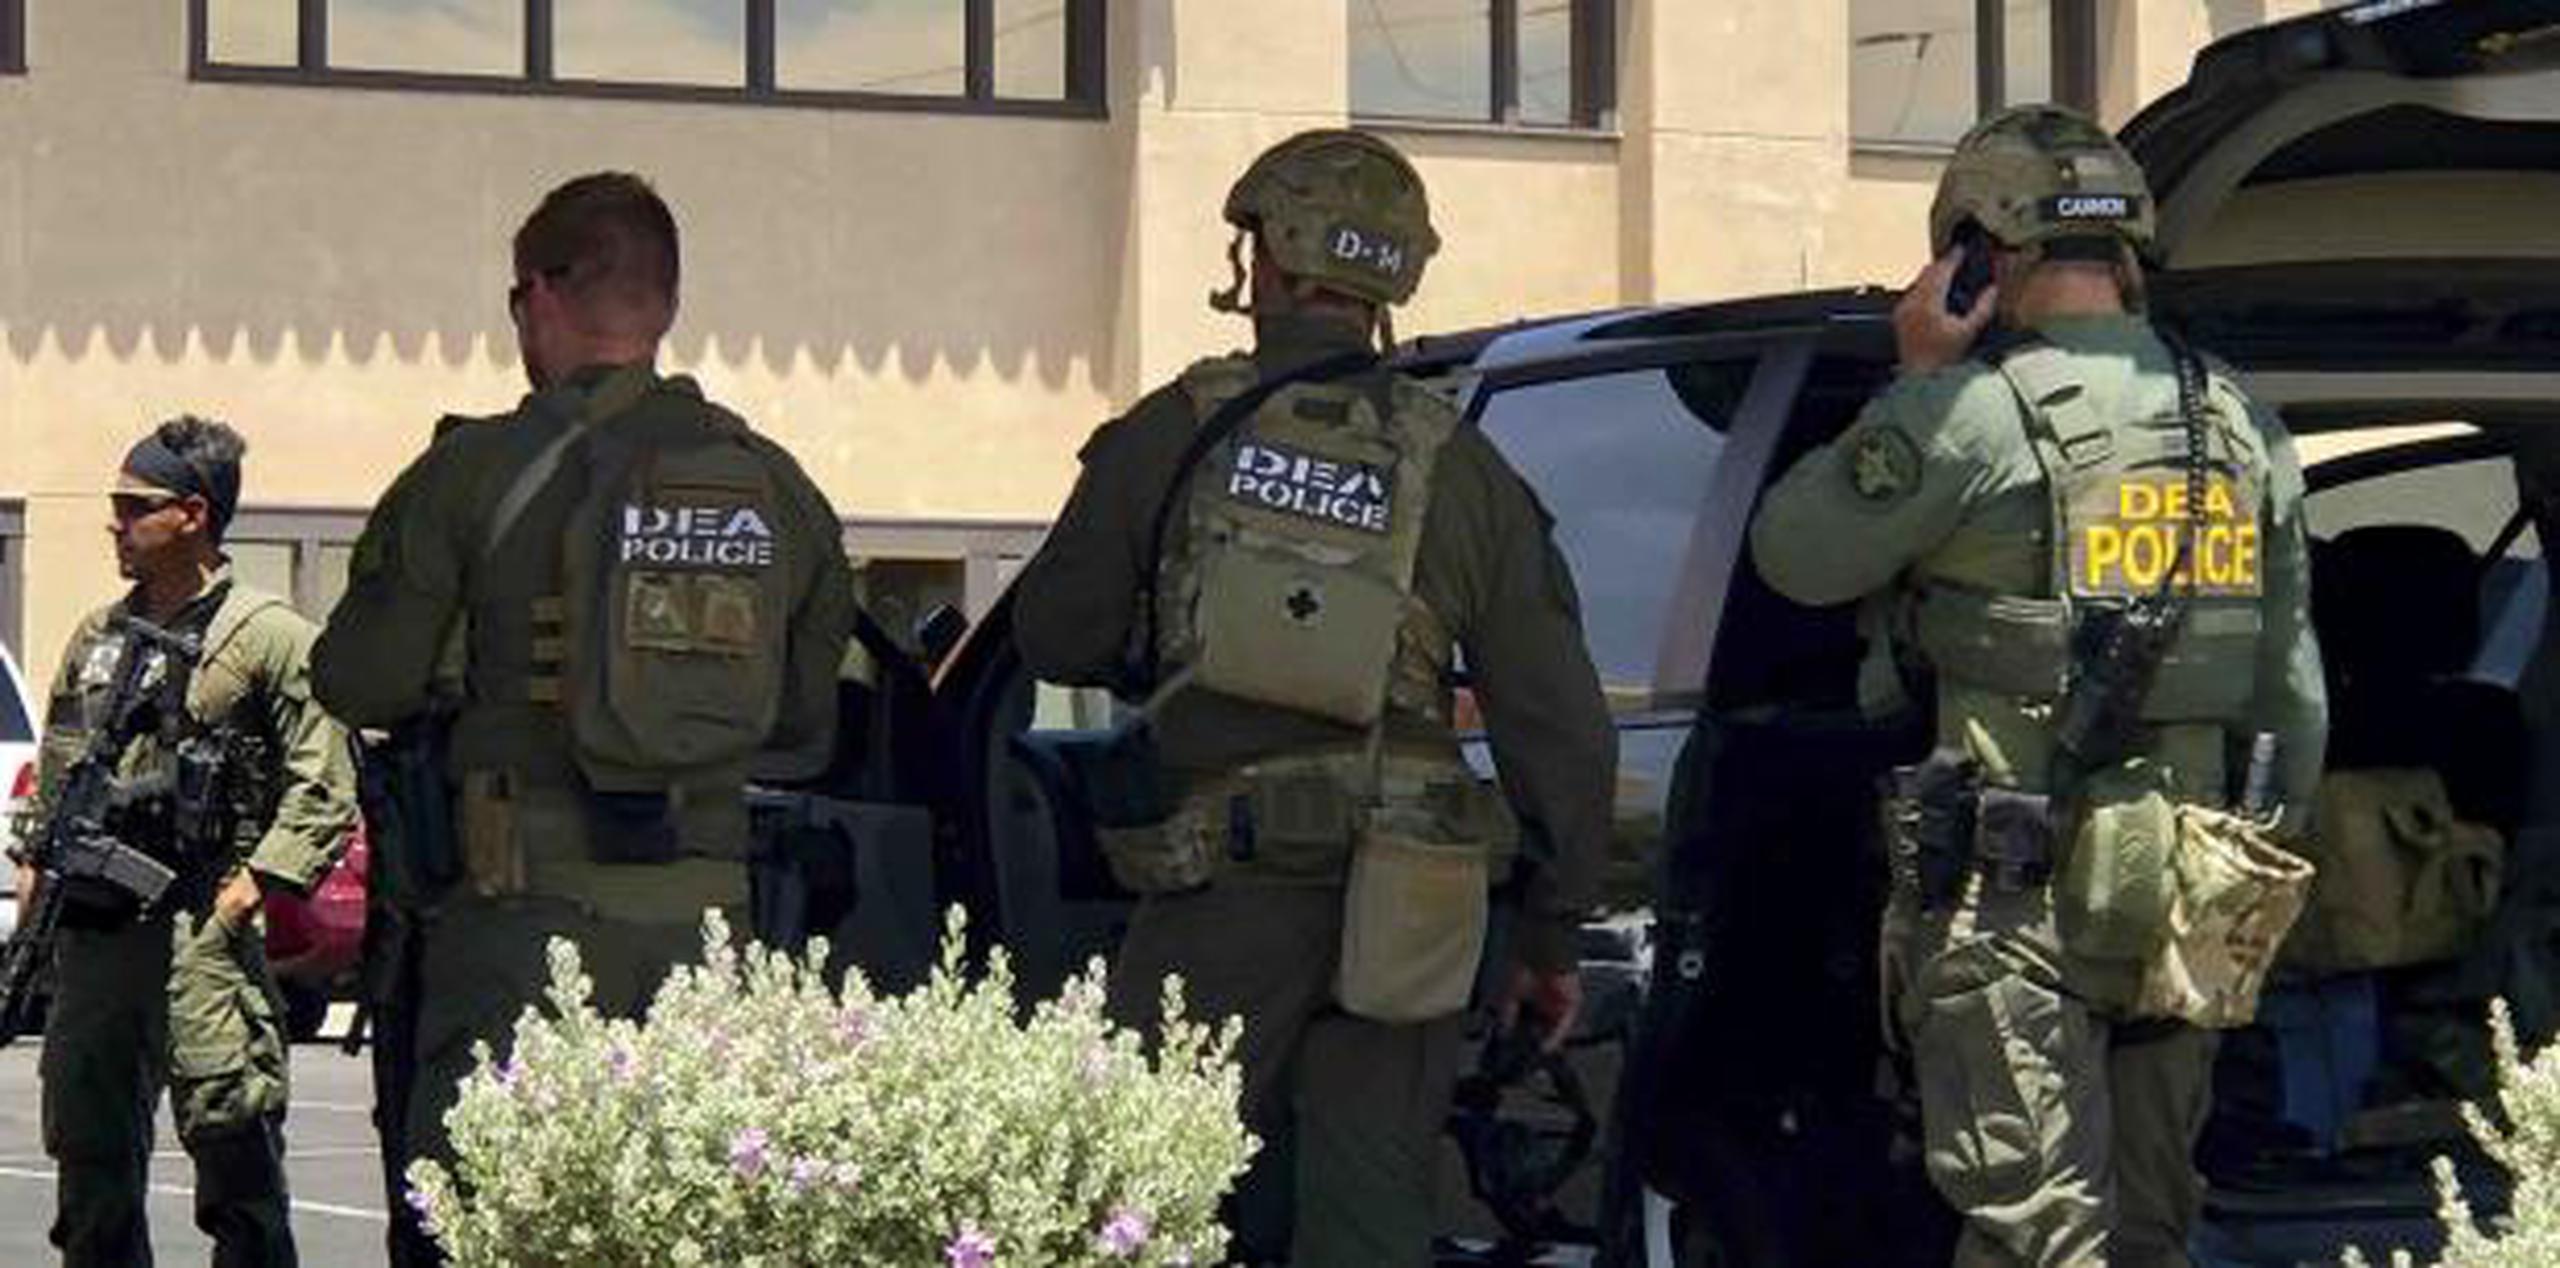 La policía de El Paso tuiteó que los agentes estaban acudiendo a un tiroteo activo y le aconsejó a la gente que se aleje del área del centro comercial Cielo Vista Mall. (AP Photo/Rudy Gutierrez)